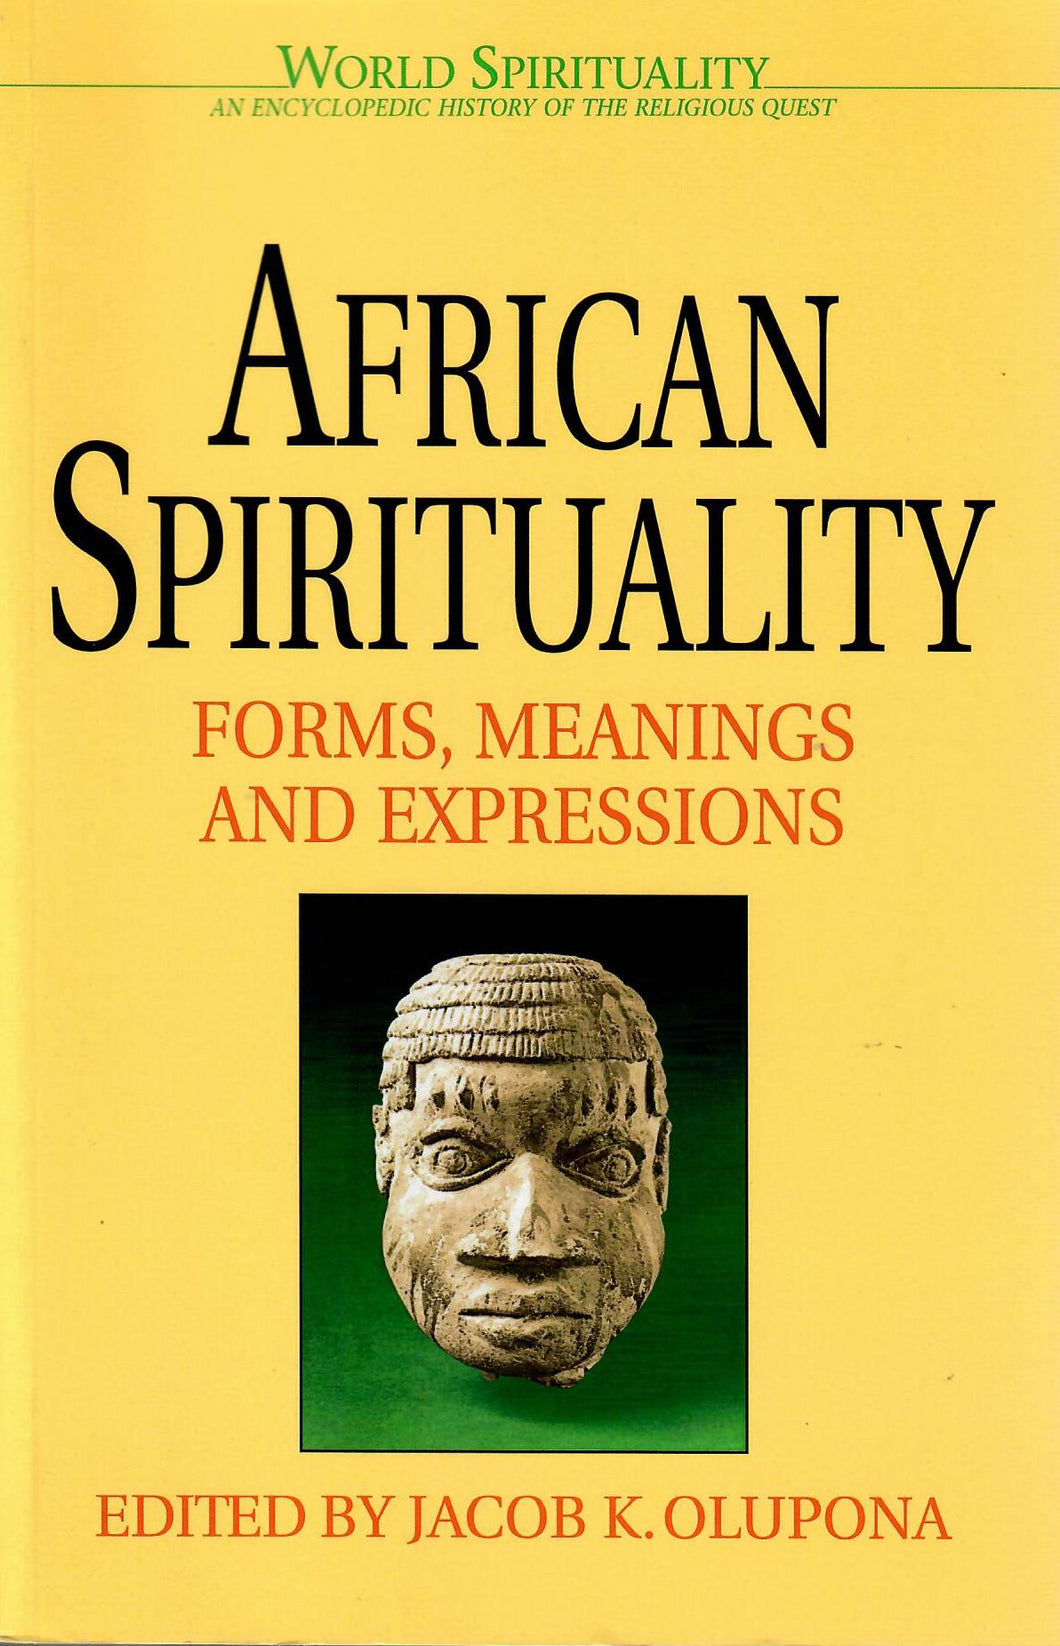 AFRICAN SPIRITUALITY - Jacob K. Olupona (Edit.)